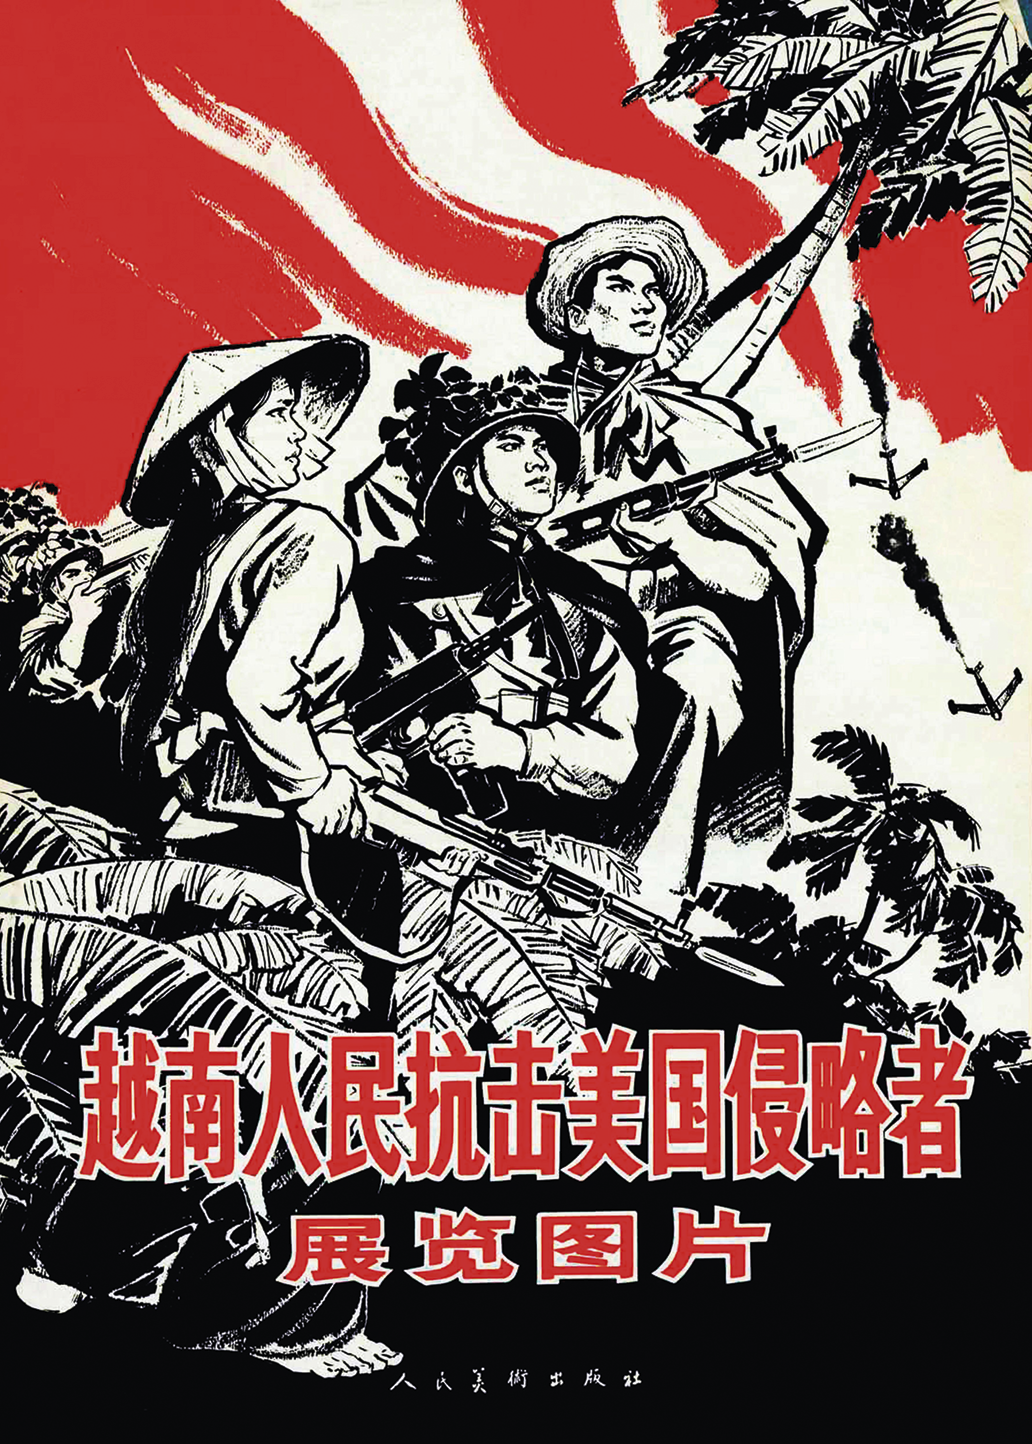 Cartaz. Na parte inferior, texto escrito com ideogramas. No fundo, ilustração de três pessoas usando capa e chapéu e segurando armas com as mãos.